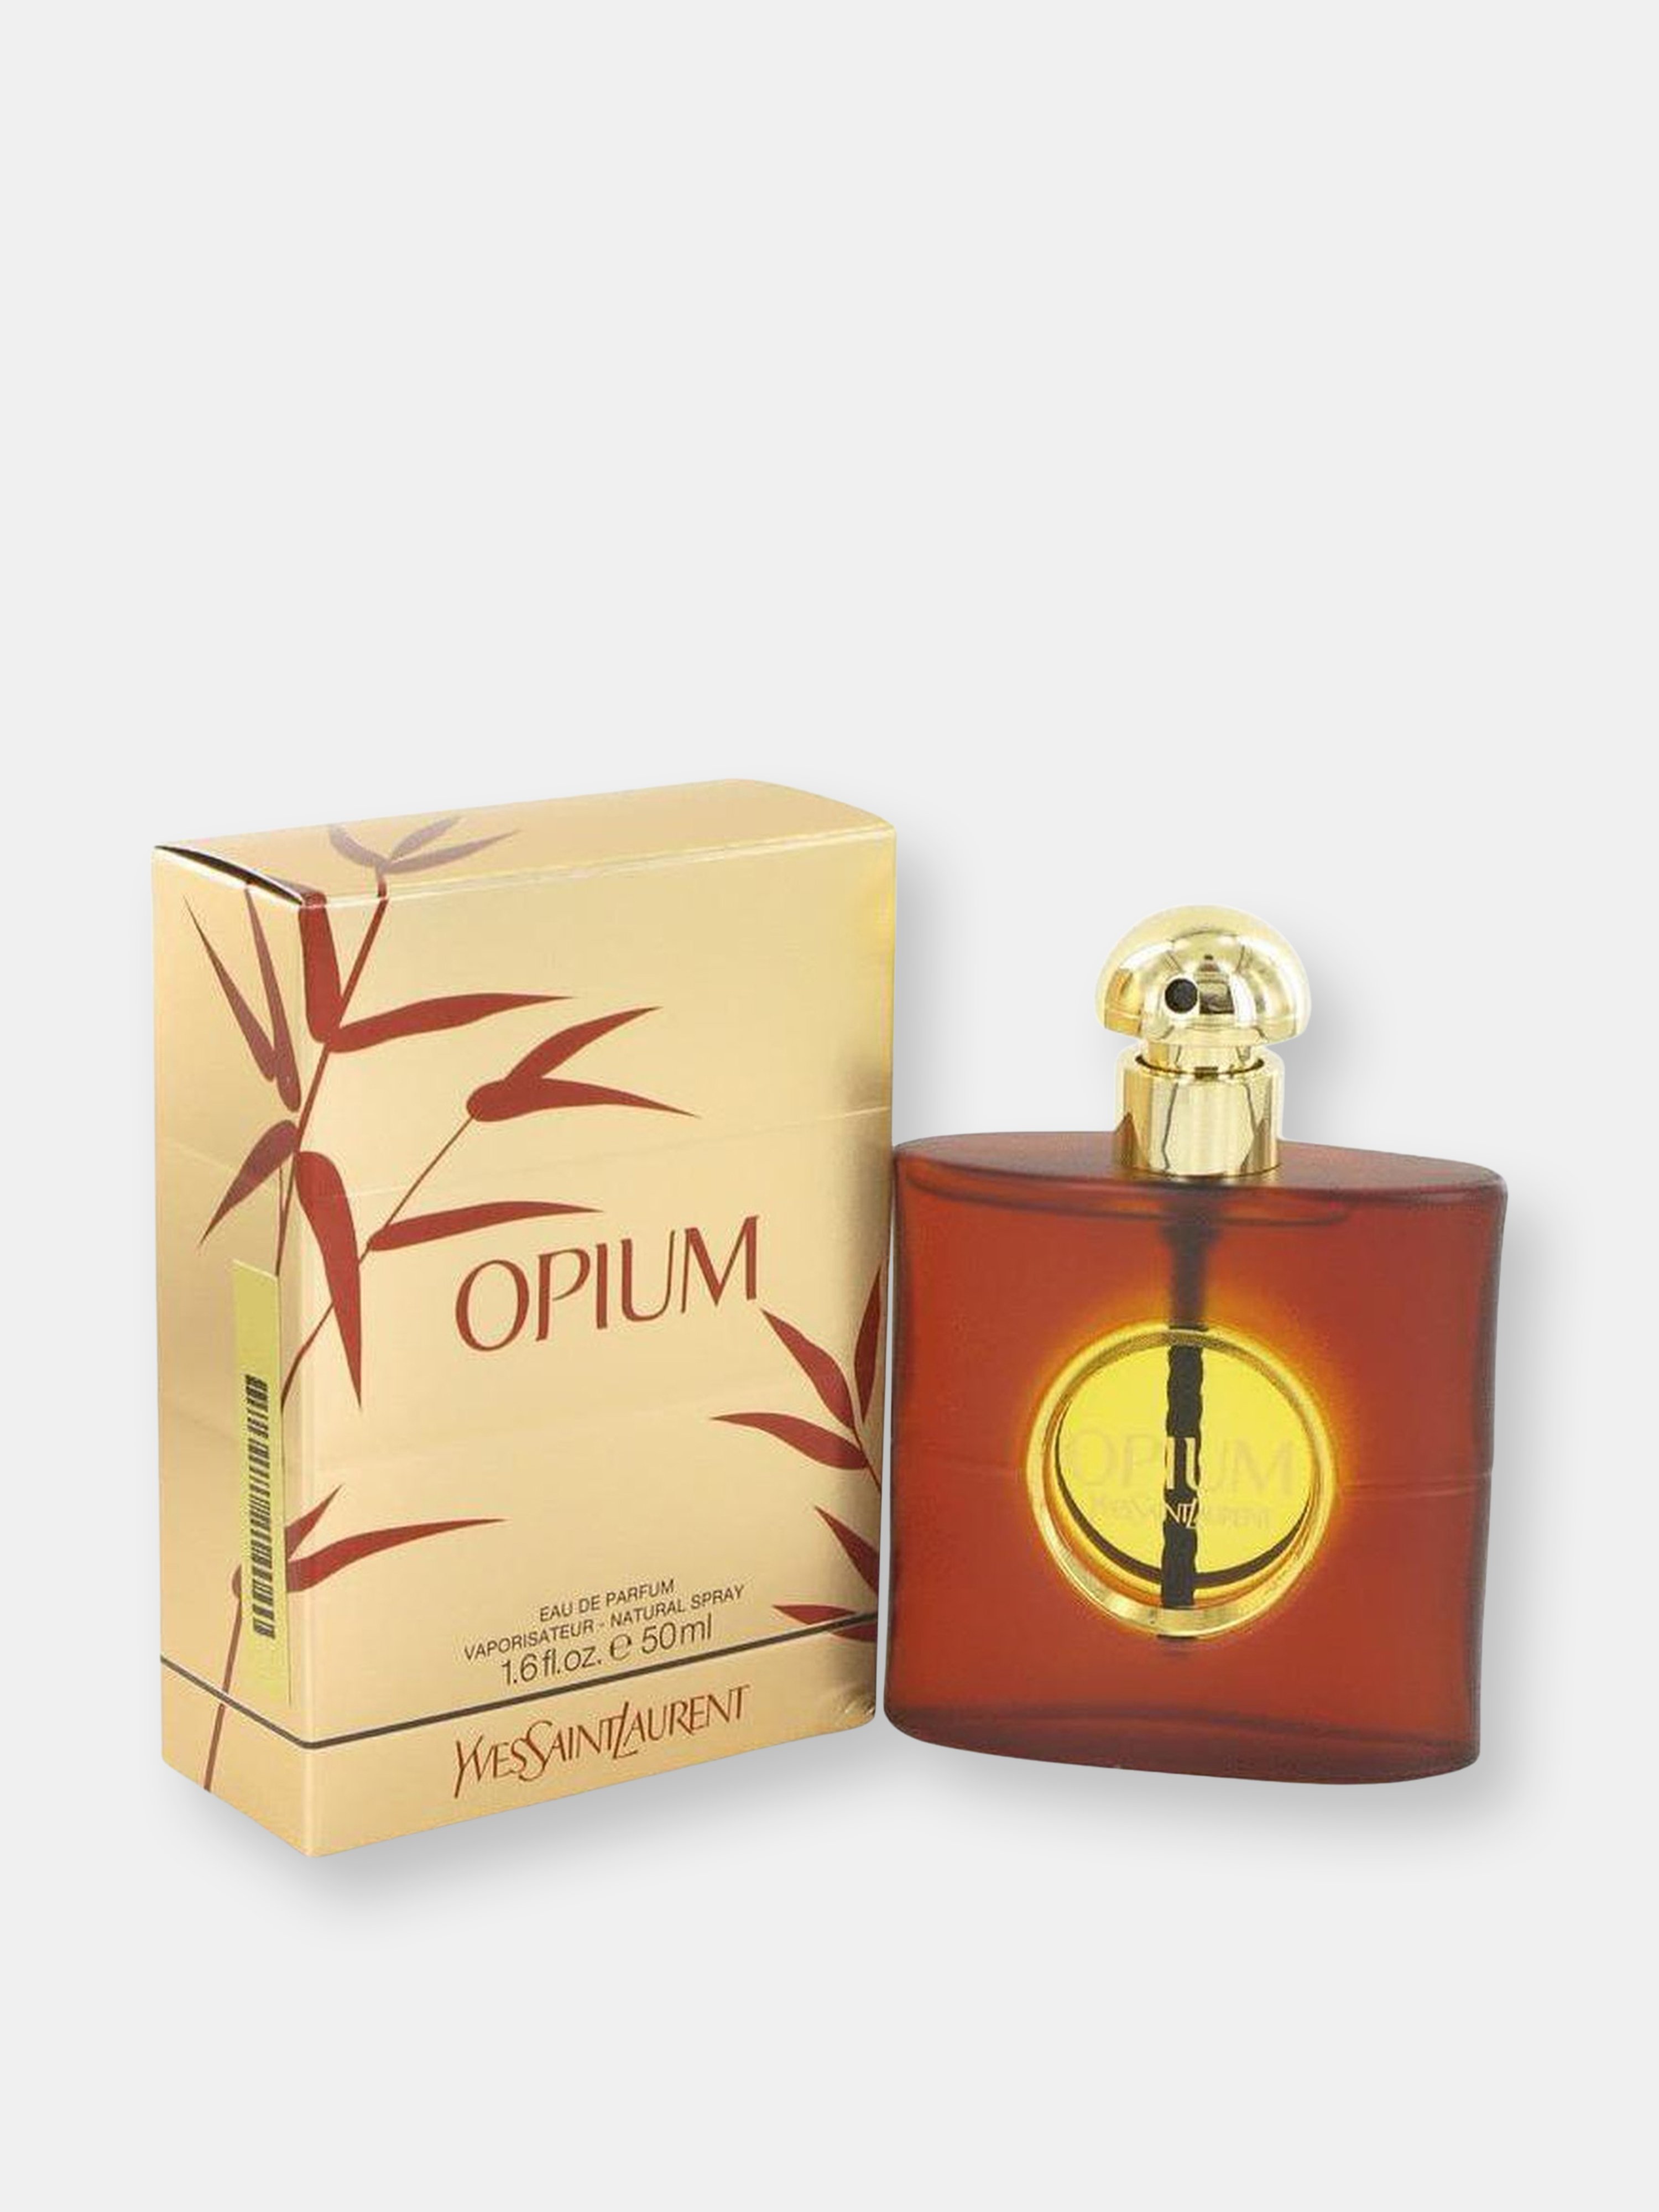 Royall Fragrances Saint Laurent Opium By Yves Saint Laurent Eau De Parfum Spray (new Packaging) 1.6 oz